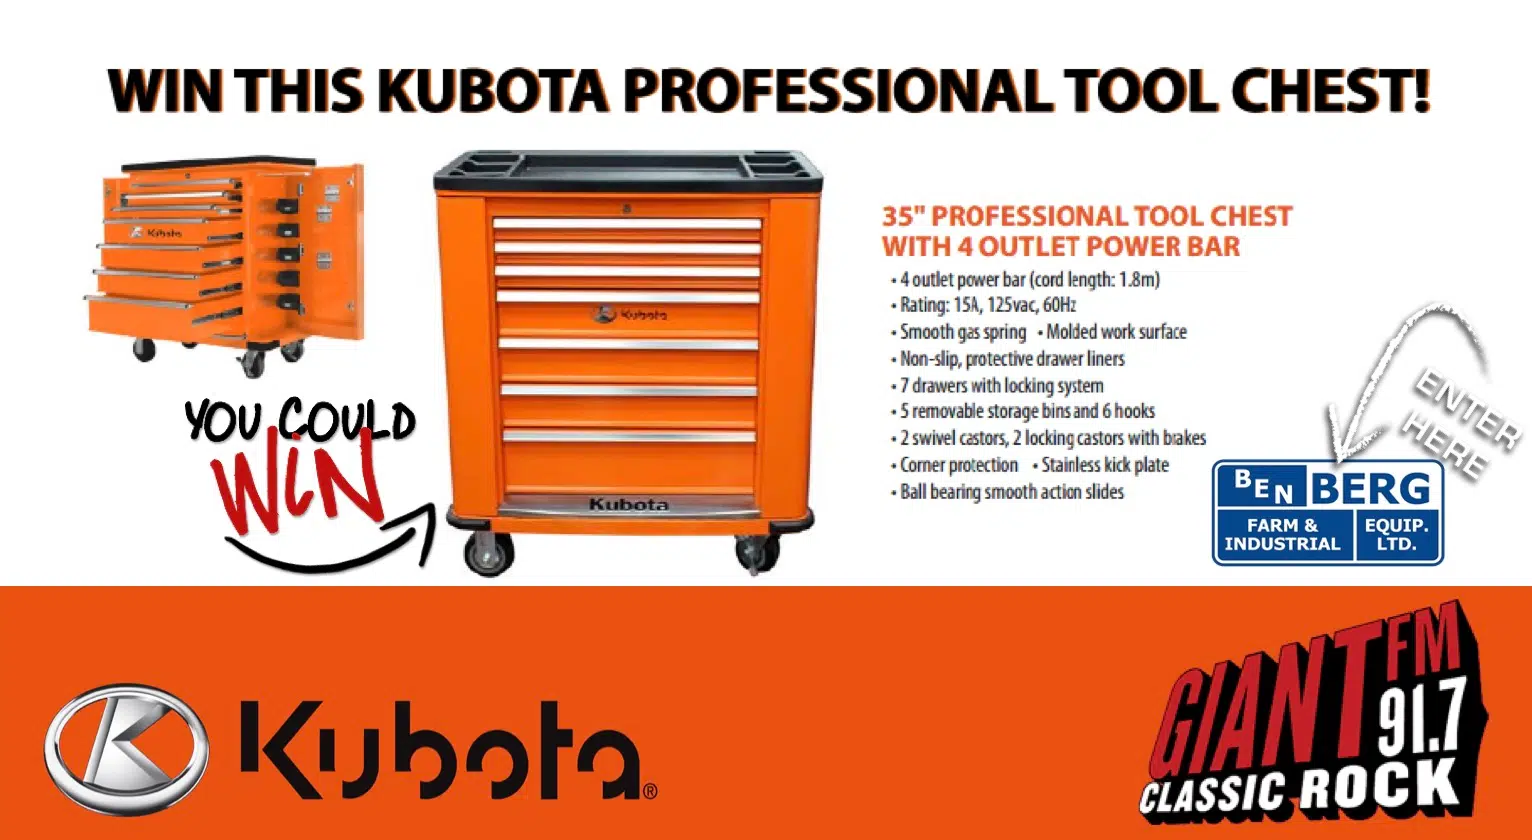 KUBOTA Tool Box Giveaway this Saturday at Ben Berg!